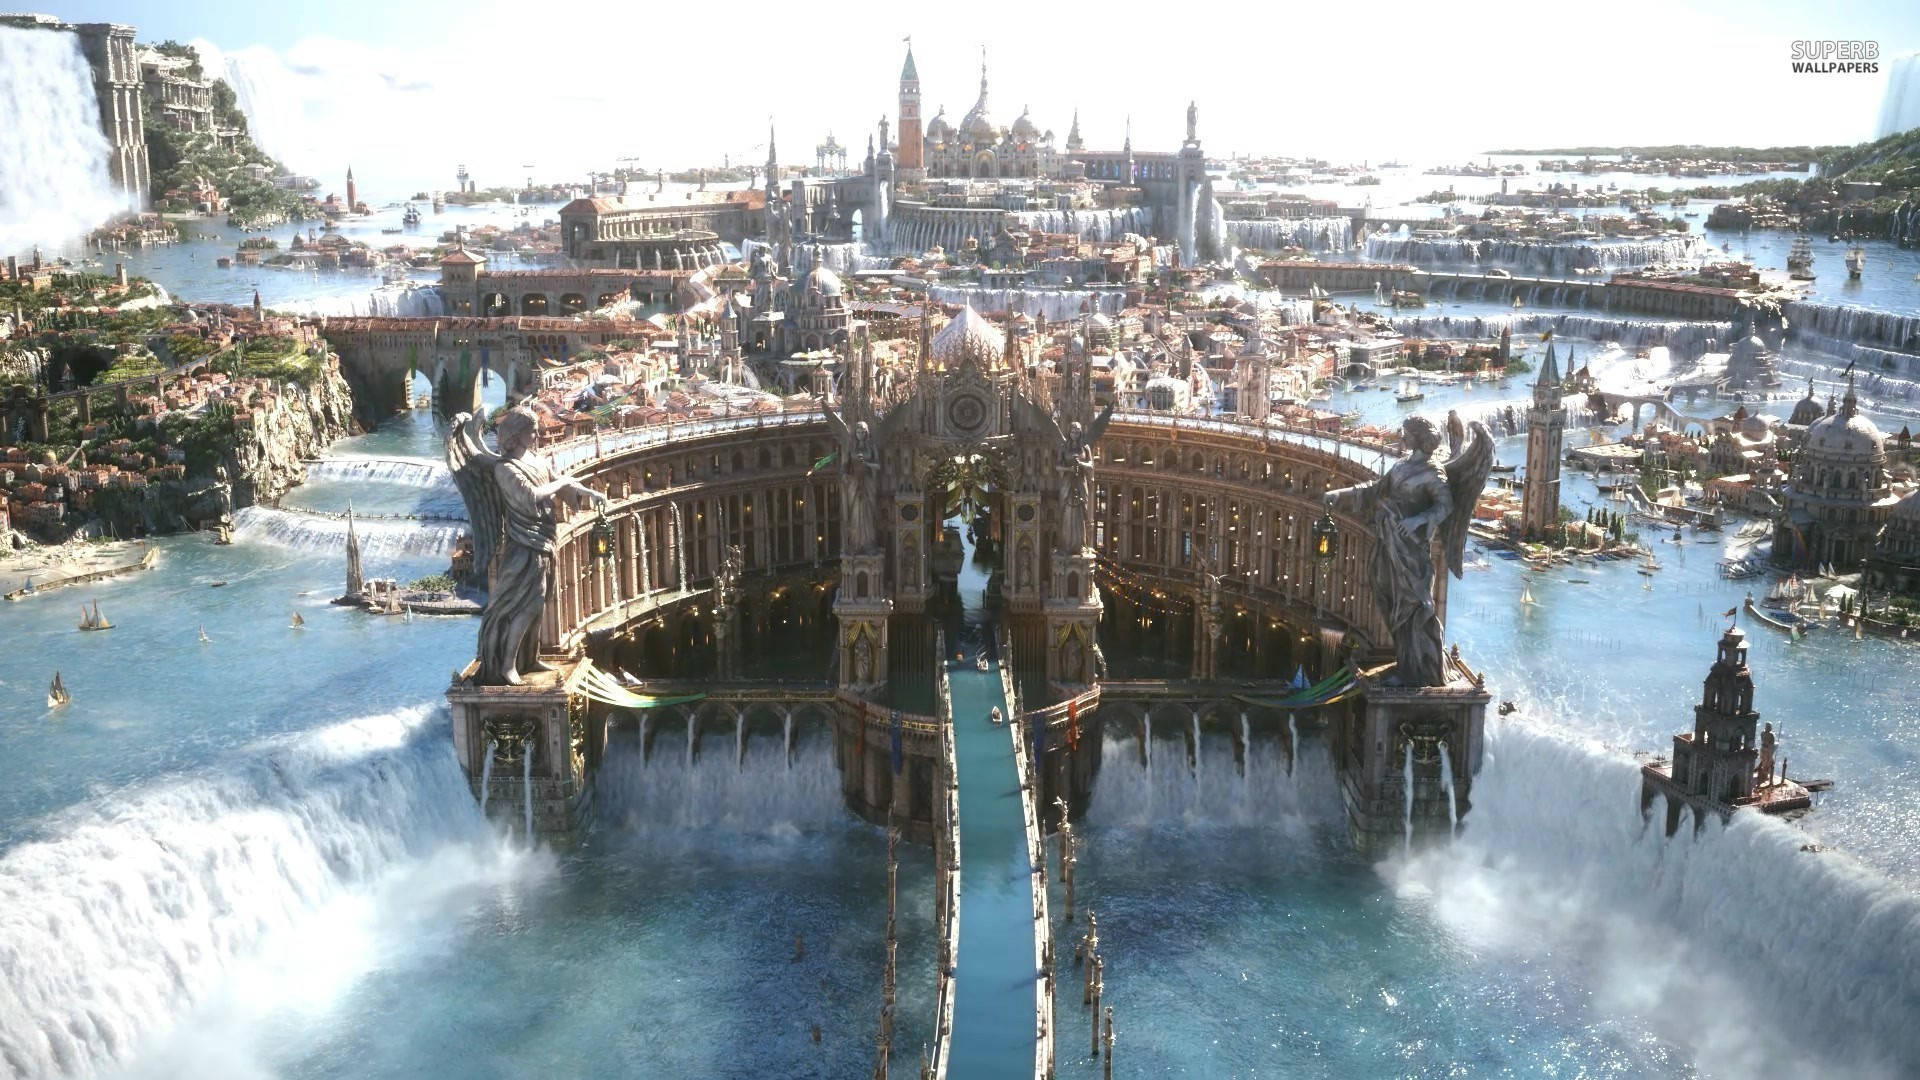 Altissia In Final Fantasy Xv Background